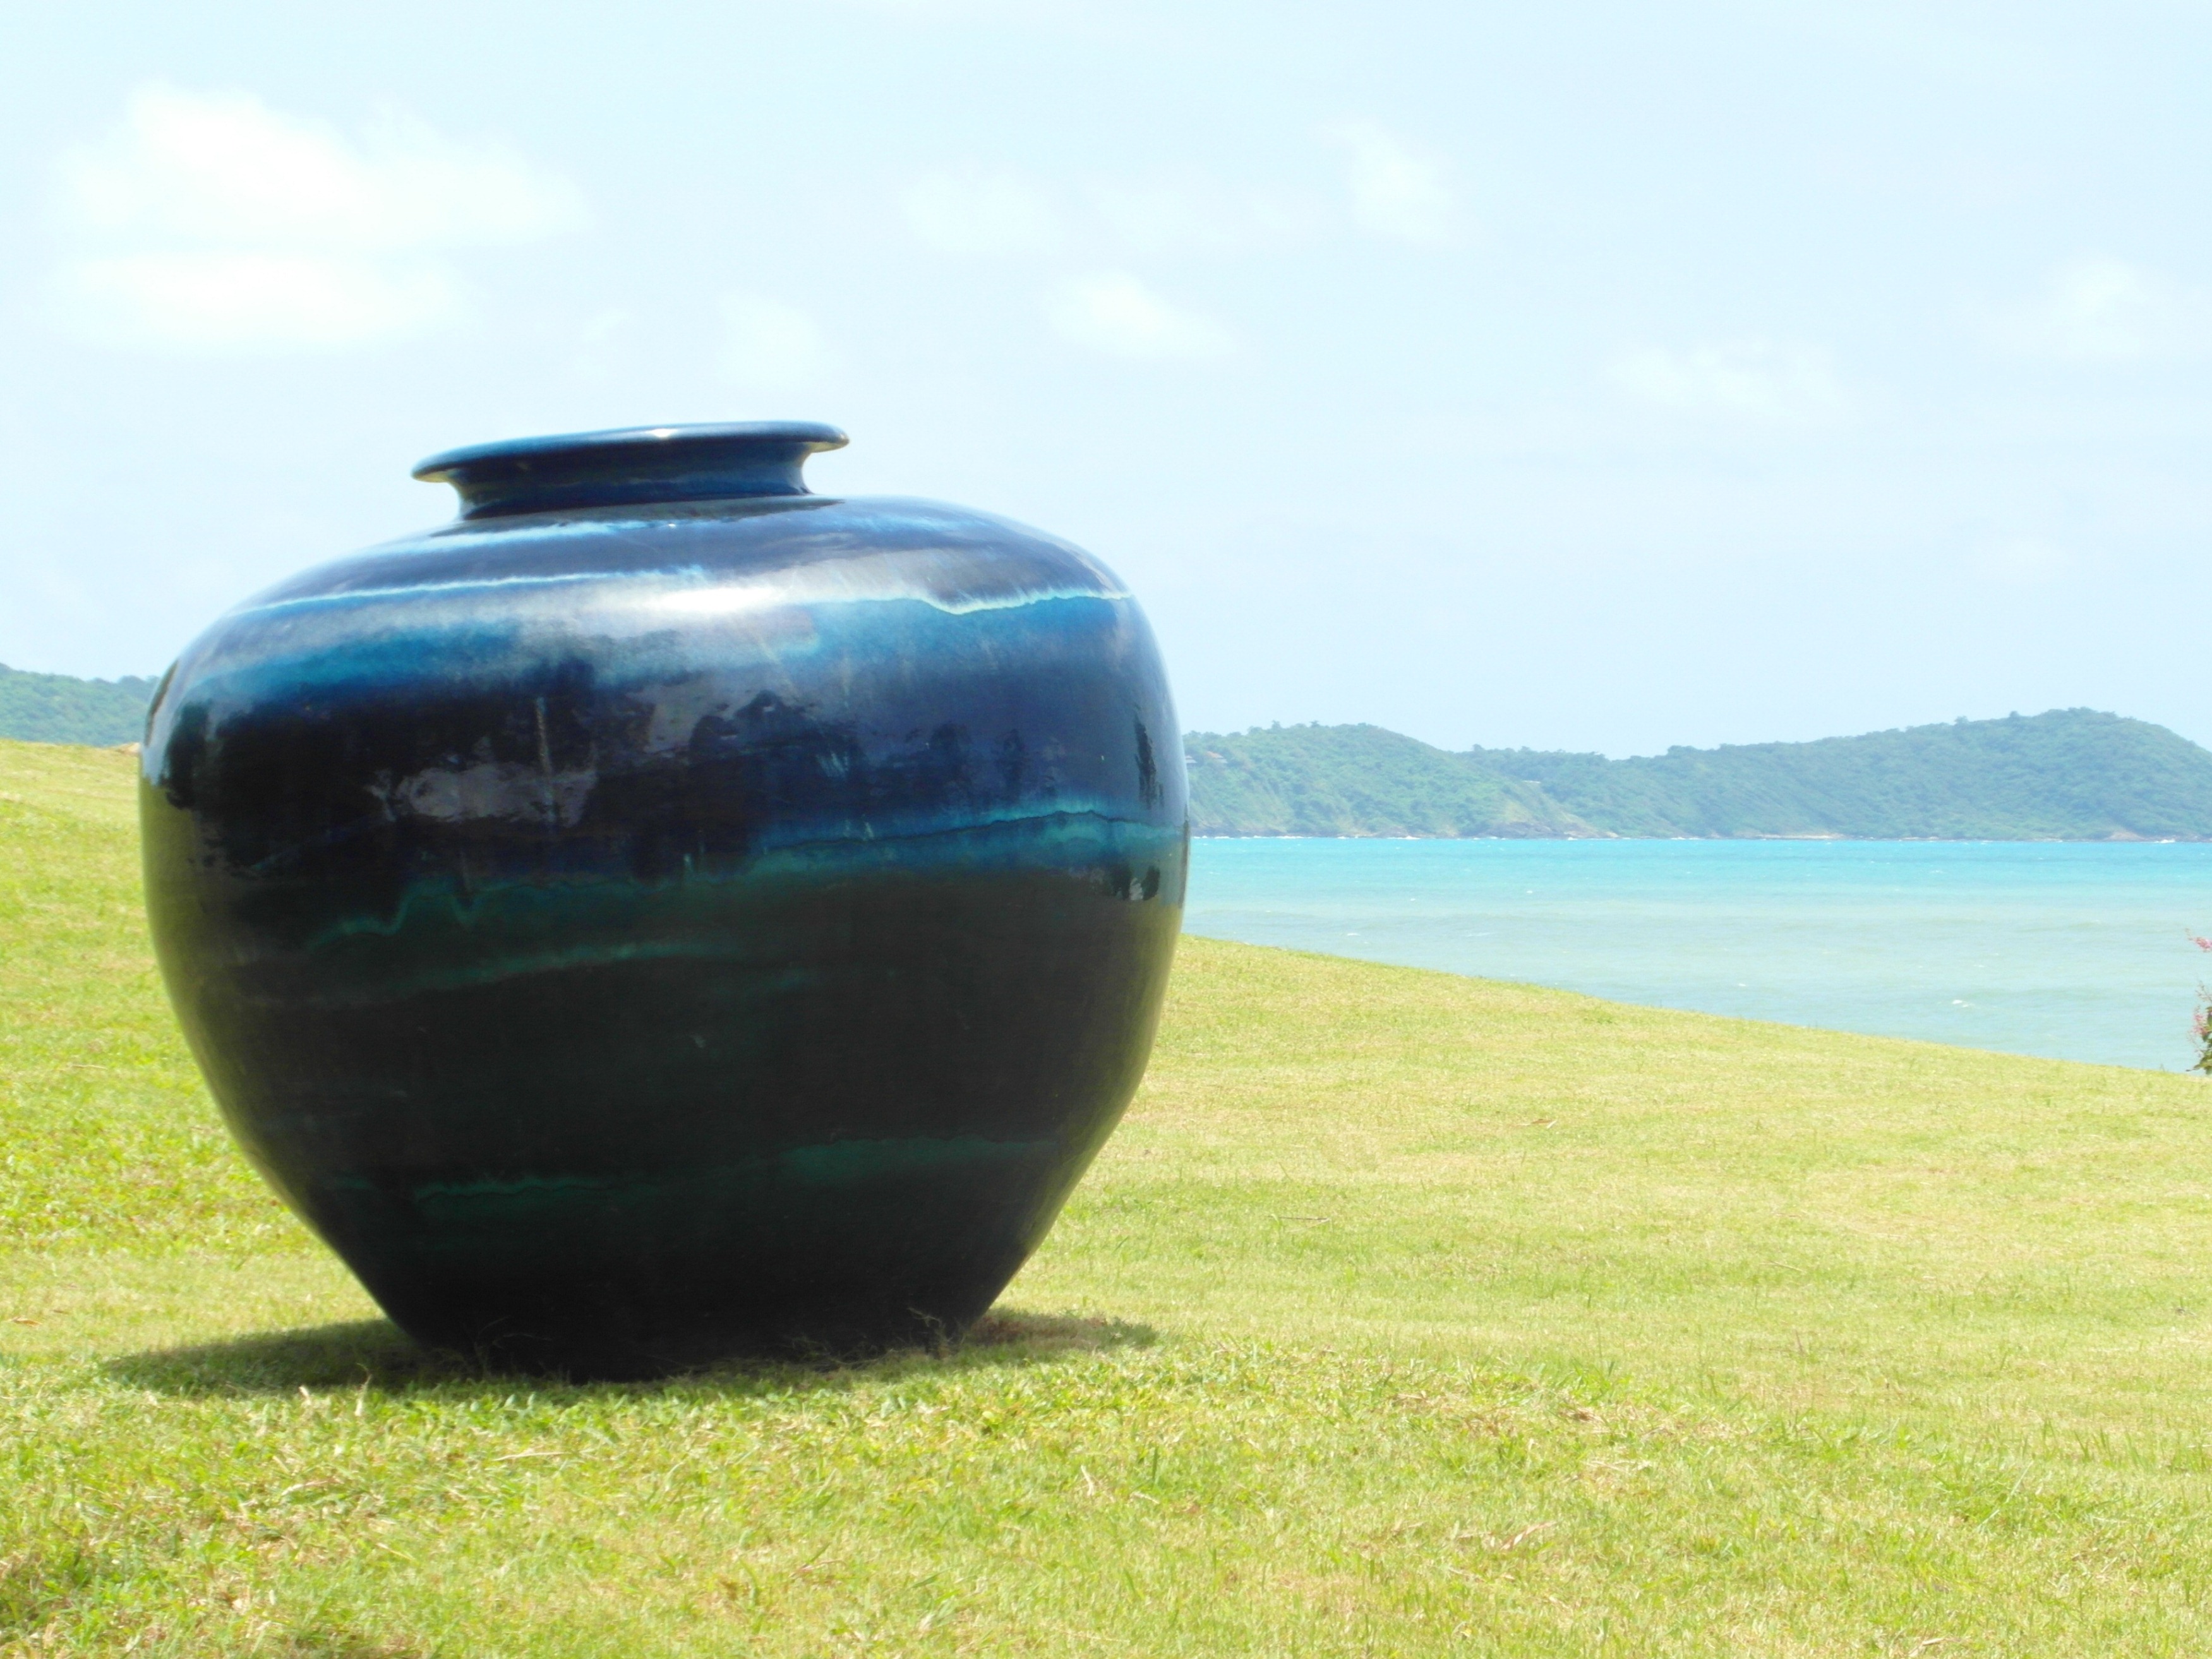 Large vase in ocean garden photo